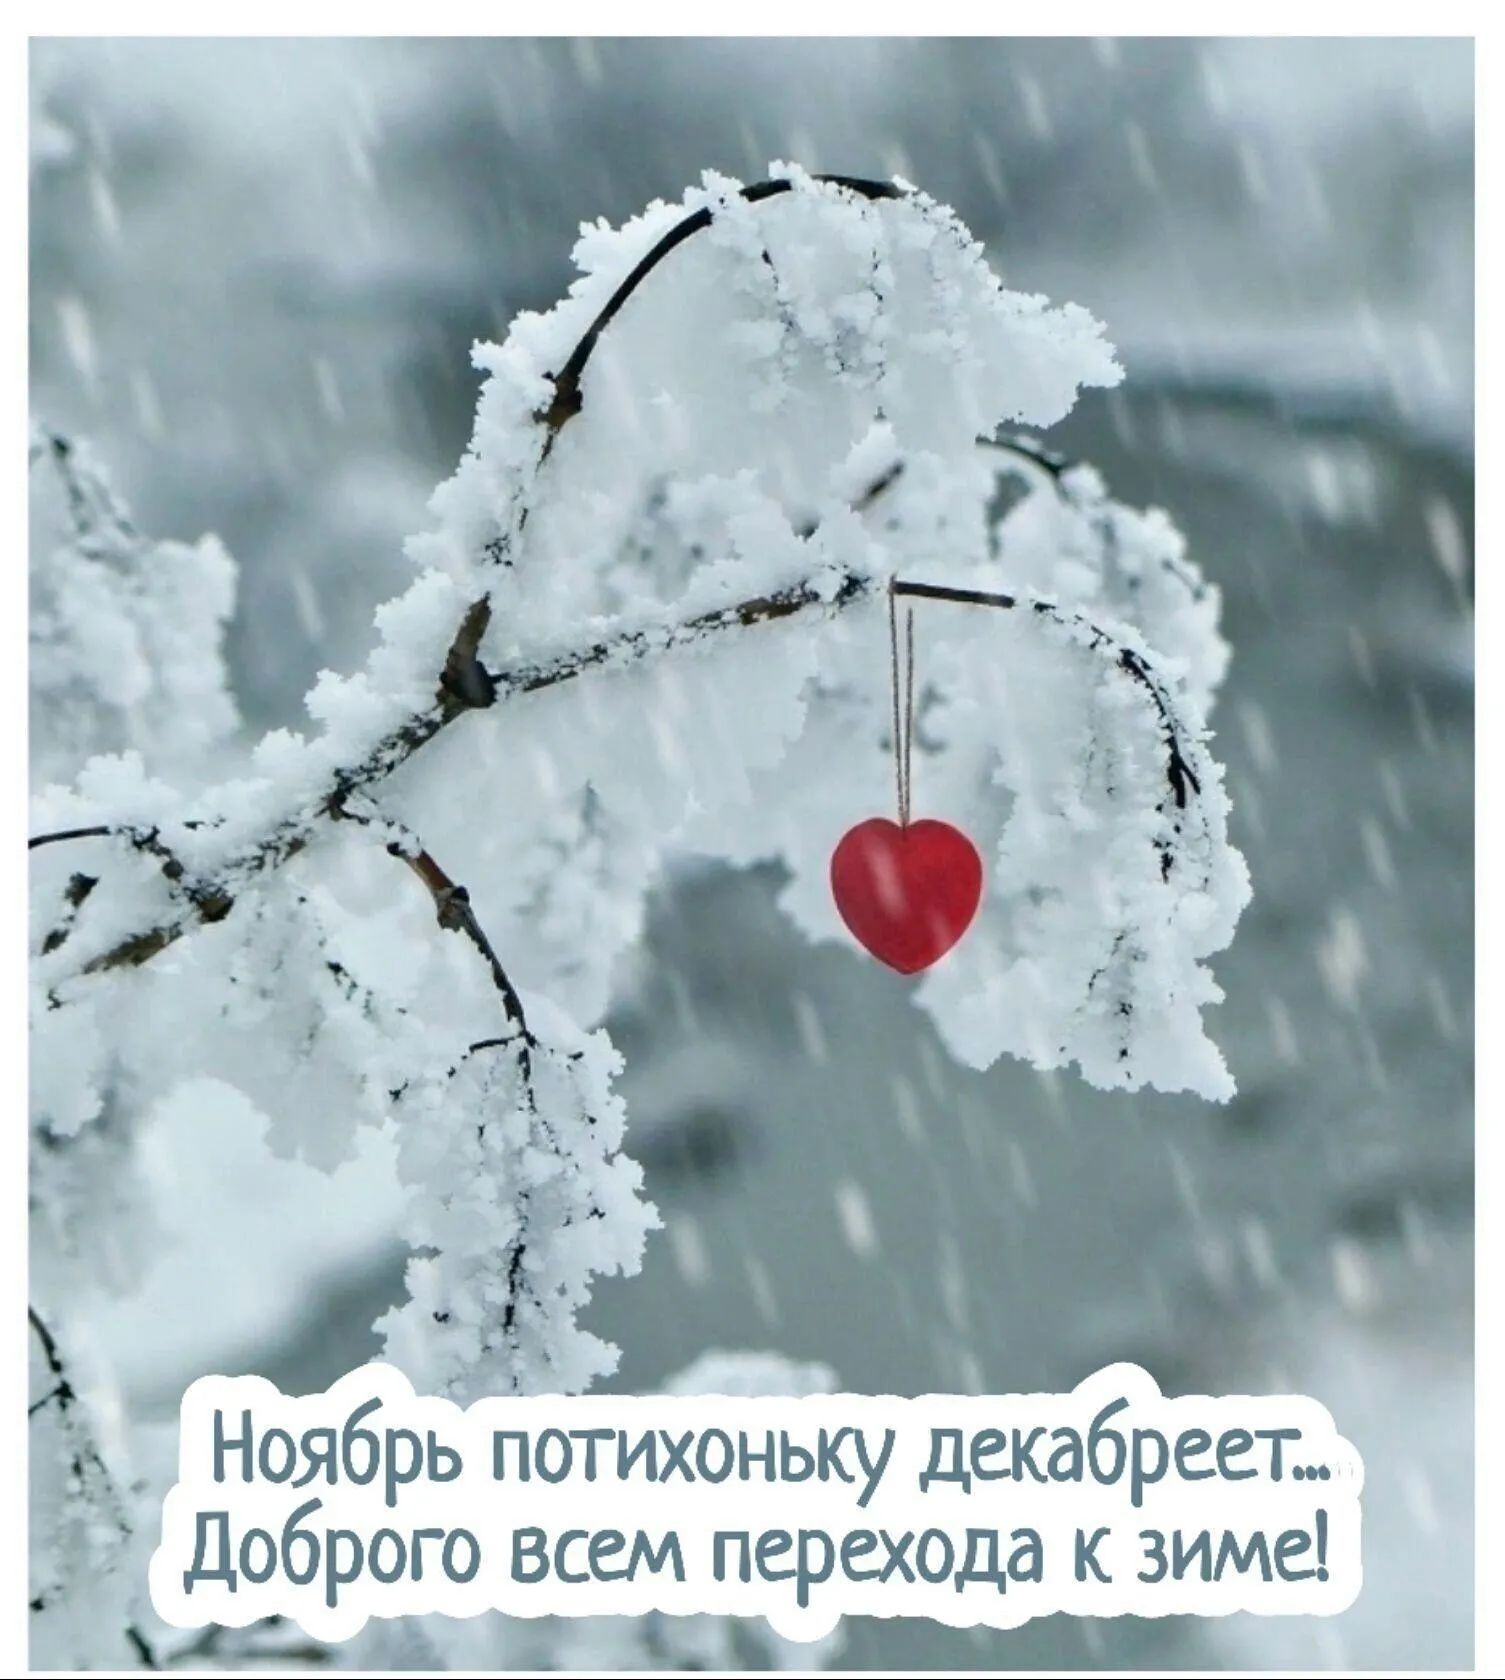 Просто будь снежным. Сердце на снегу. Зимнее сердце. Зимняя романтика. Нежность зимой.